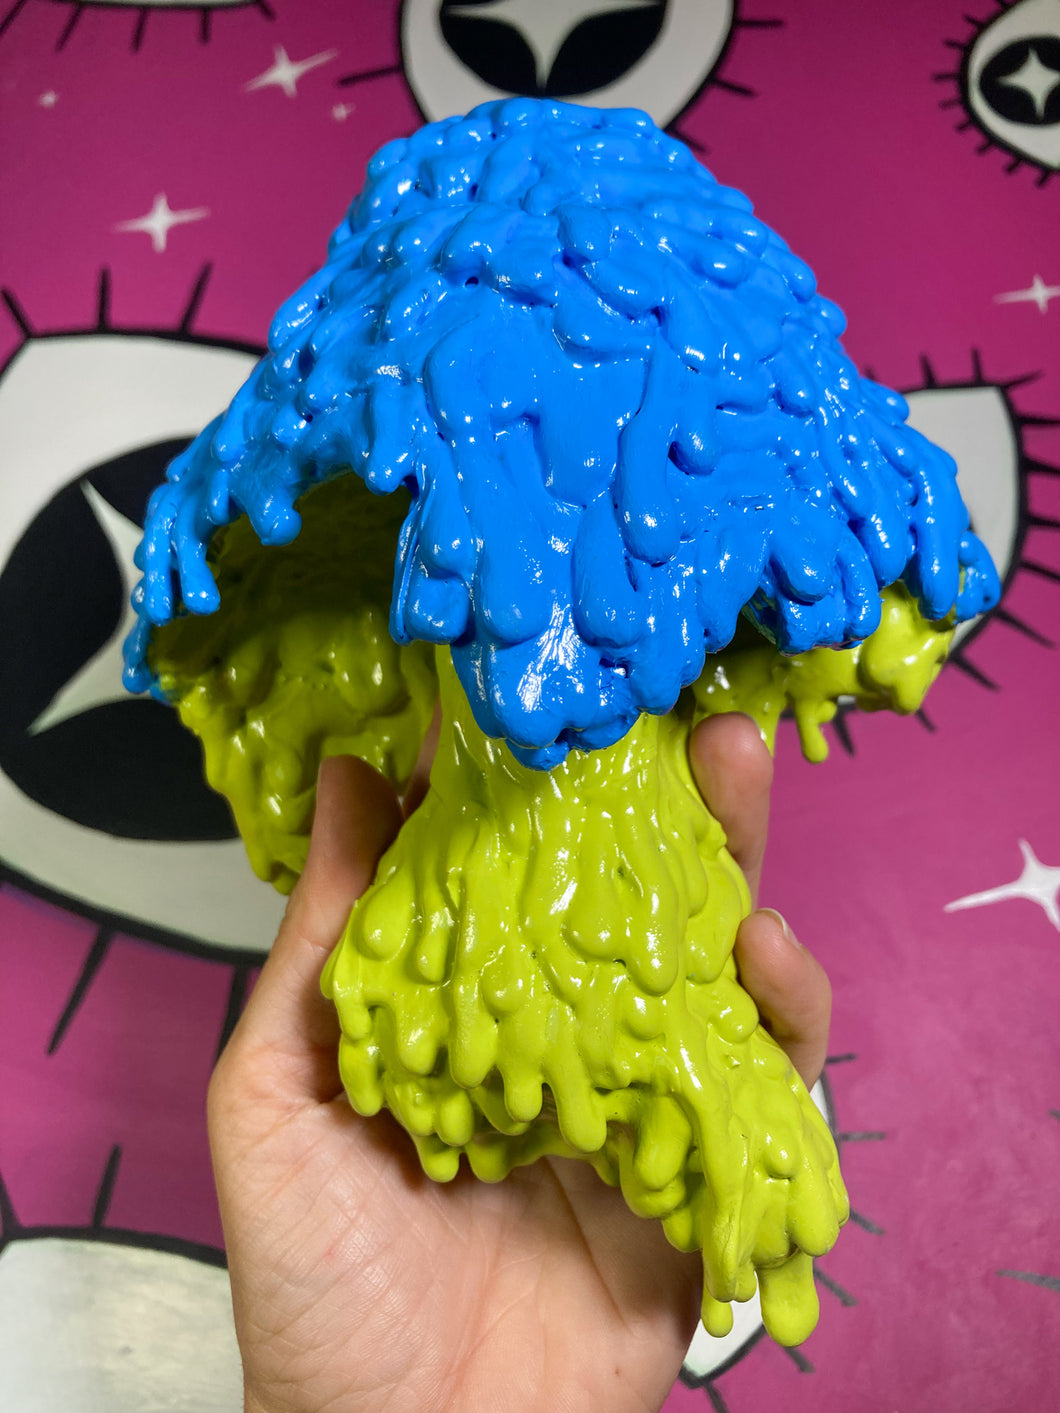 Melting mushroom sculpture (Blue & Green)